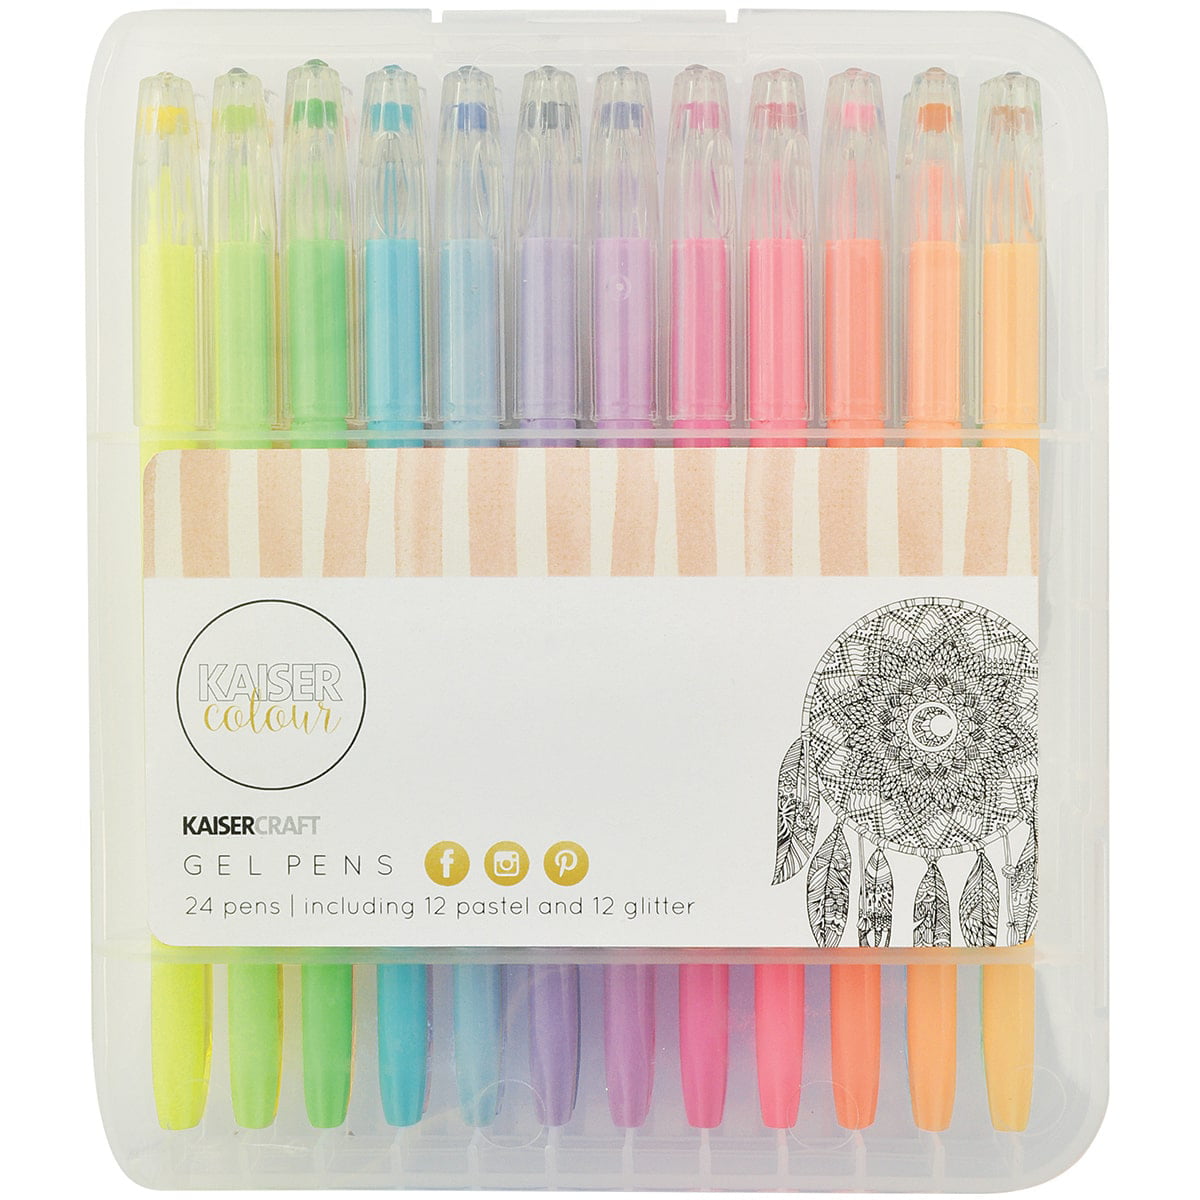 Kaisercraft Gel Pens (24 12 Pastel & 12 Glitter Colors - Walmart.com